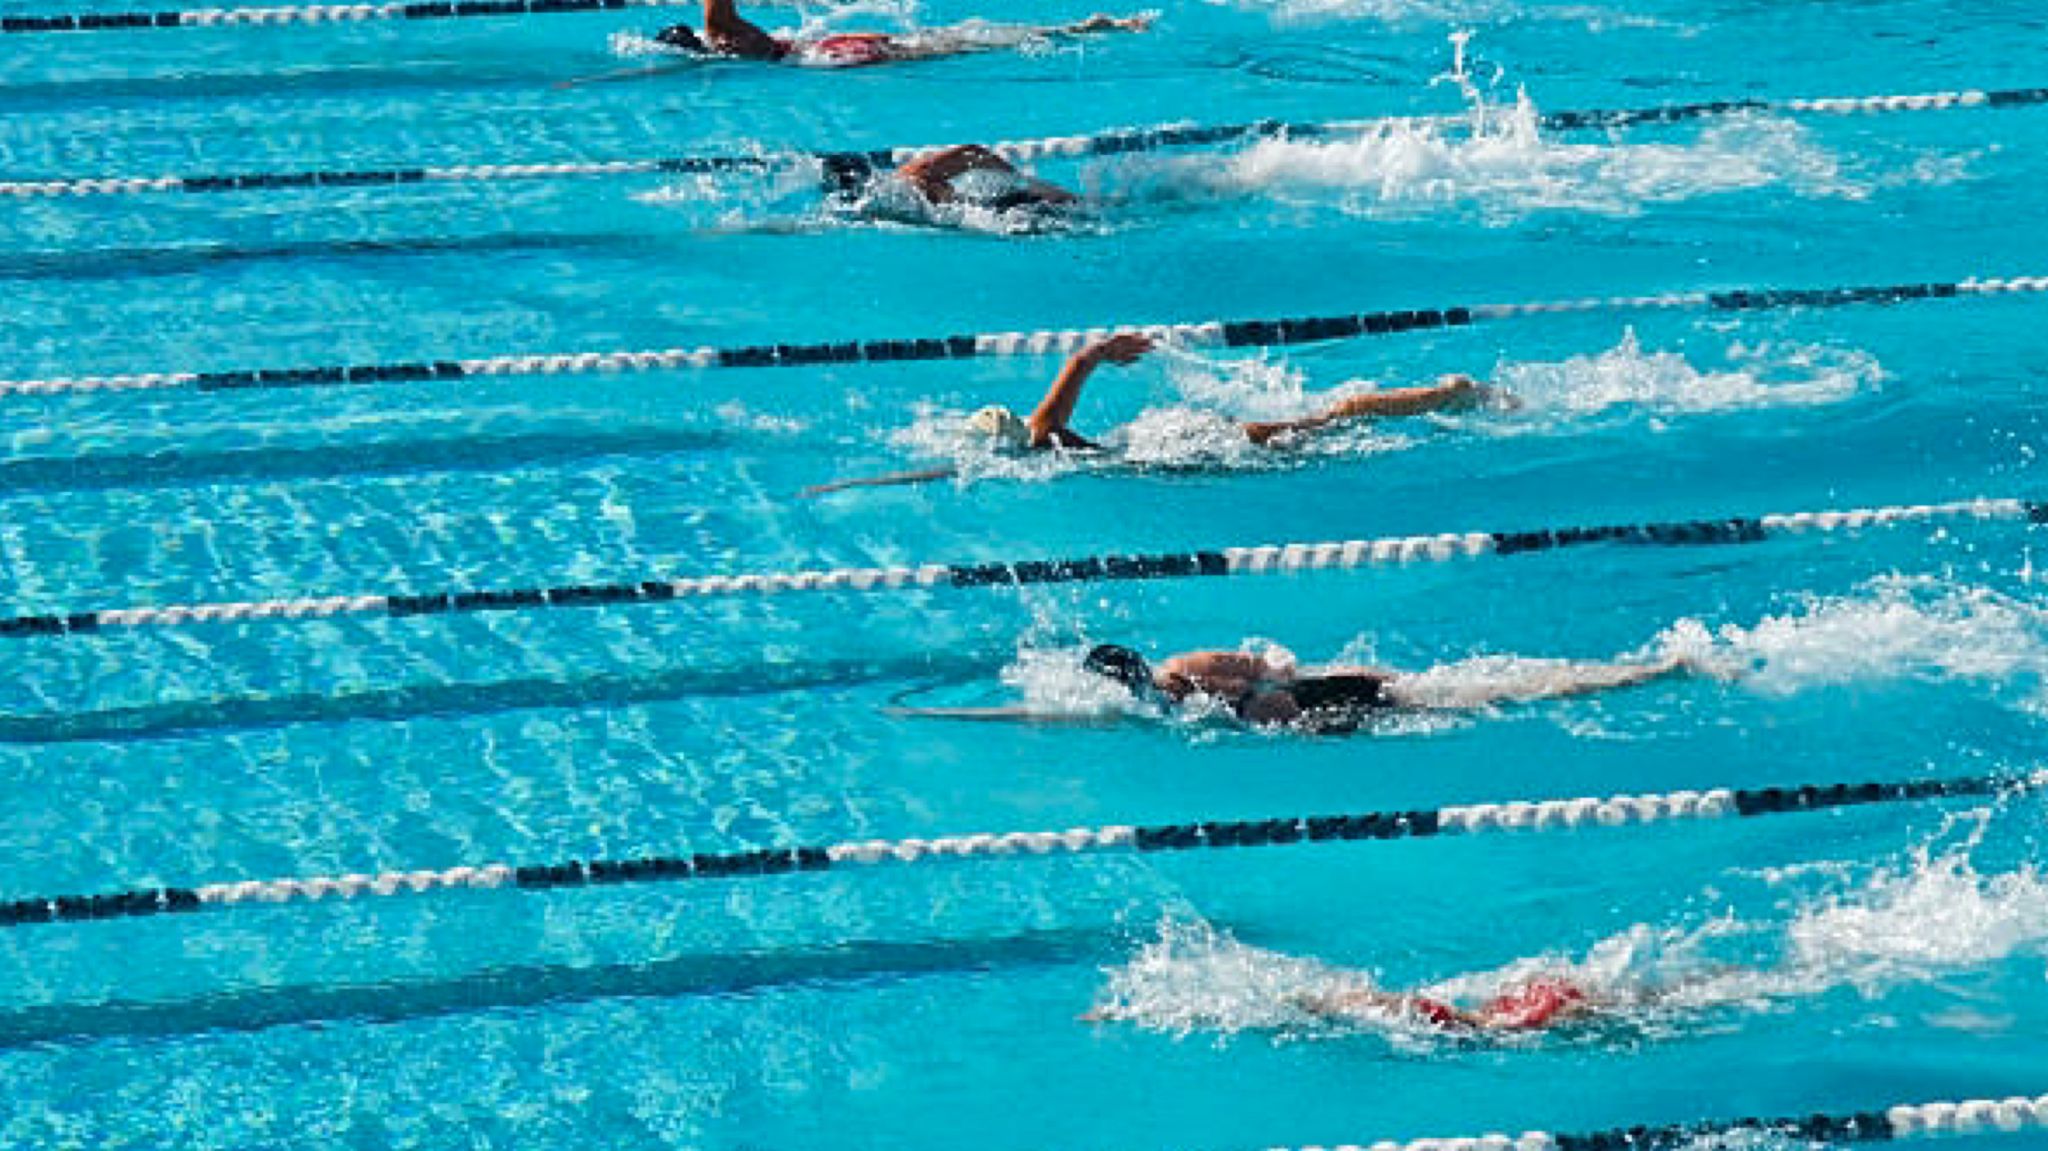 Olbia Nuoto: ottime prestazioni per gli atleti olbiesi al campionato regionale